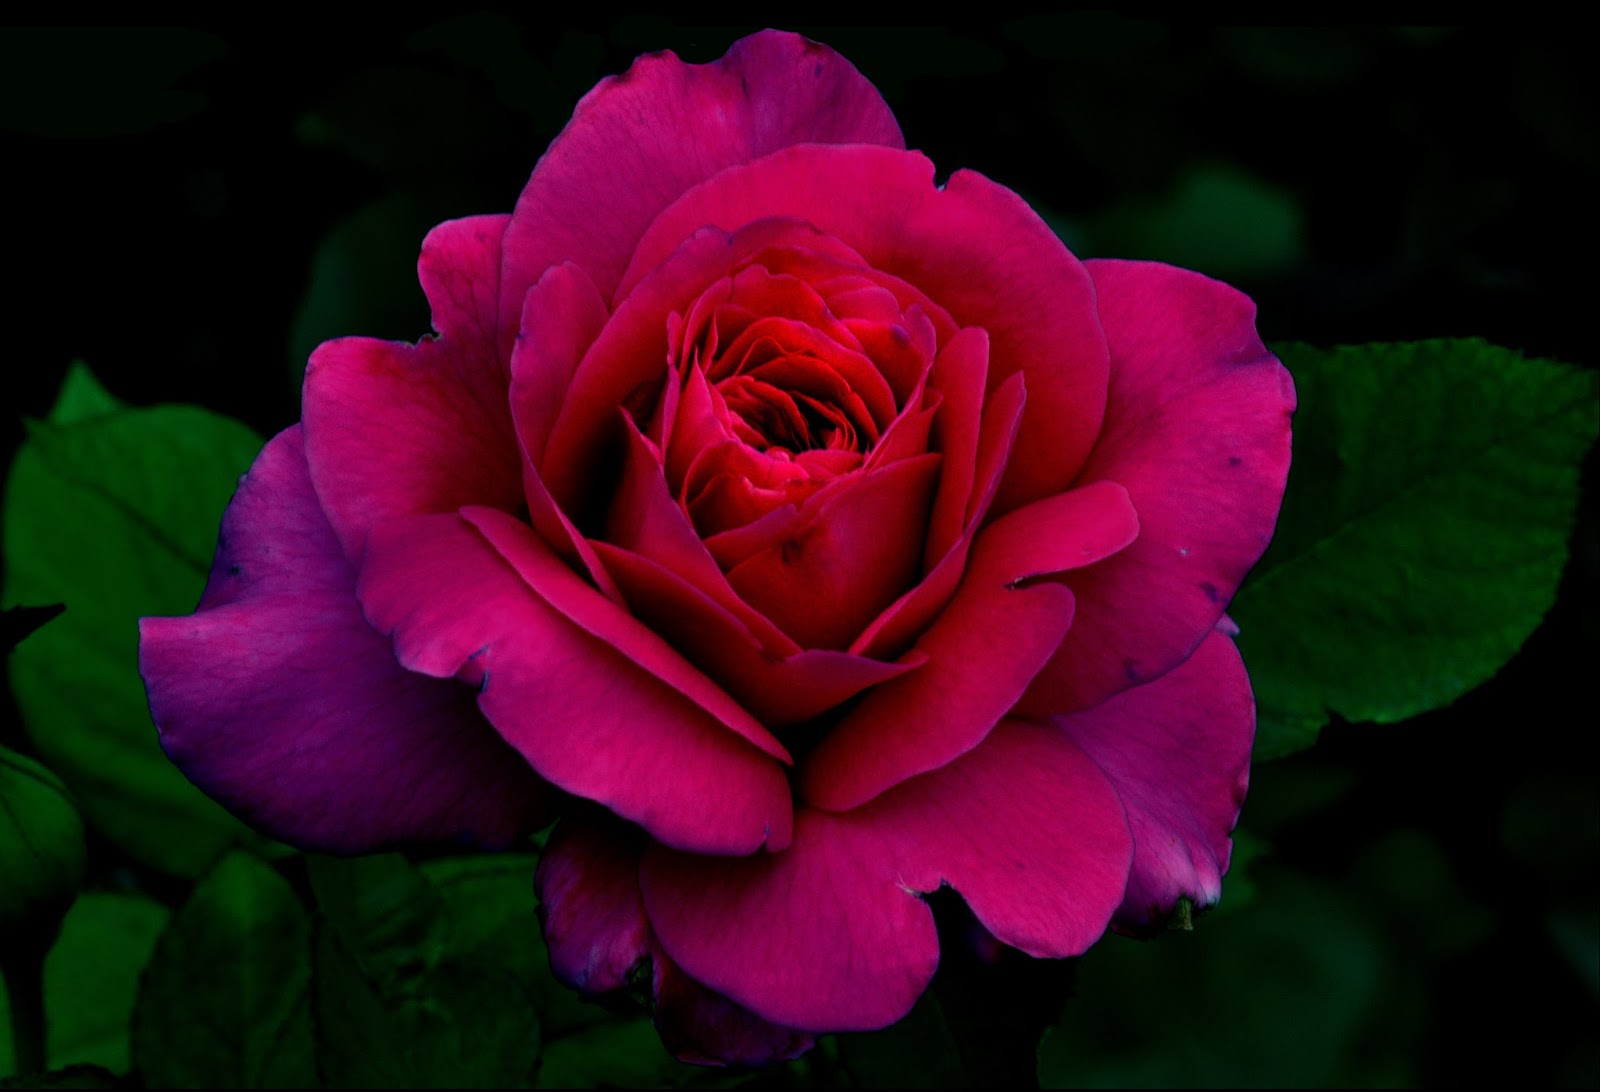 Te regalo una rosa - Página 10 Imagenes-y-fotos-de-flores-para-fondos-y-wallpapers-gratis-free-flowers-photos+(1)